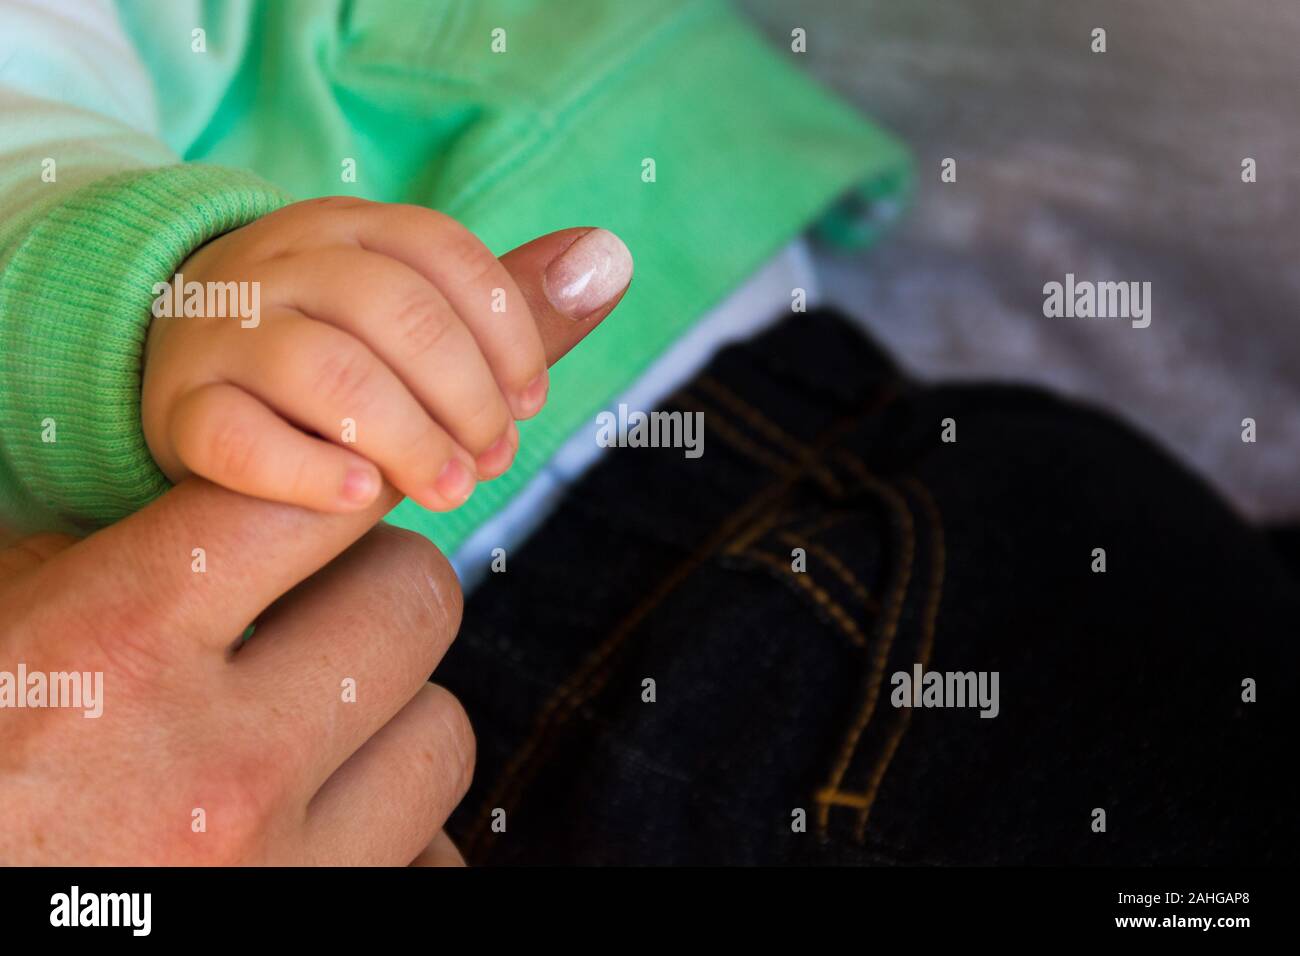 Baby hand holding mother's finger avec ongles vernis. Les relations délicates de la famille. L'amour, l'affection, la confiance, l'Union européenne, le concept de soins Banque D'Images